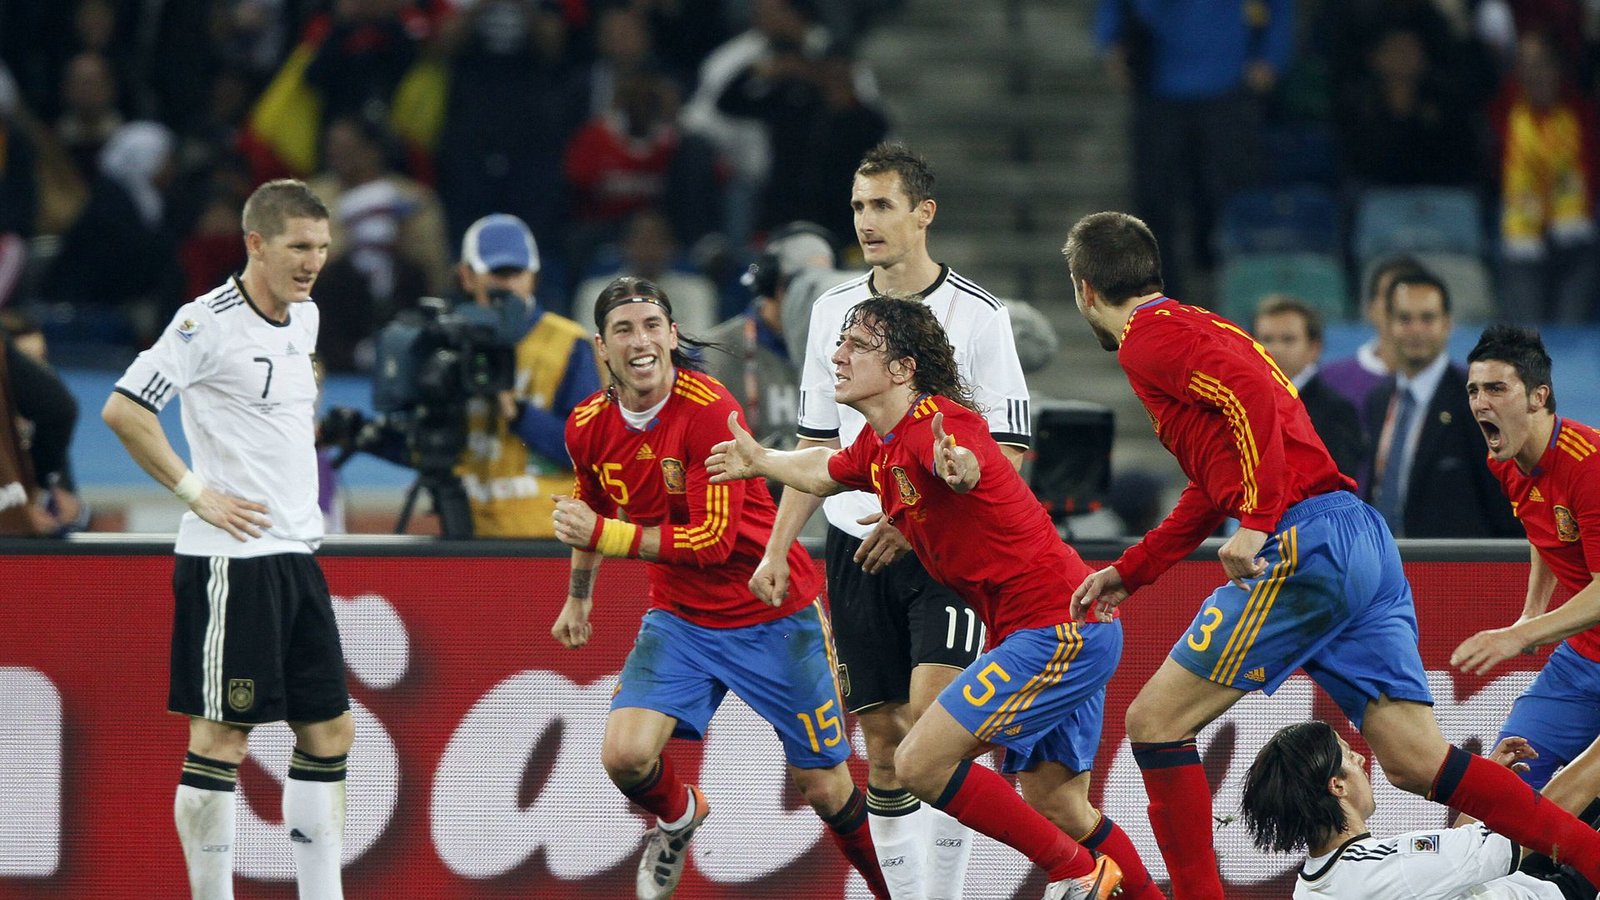 Carles Puyol köpft sein Team schließlich nach einer Ecke mit dem Tor des Tages ins Finale (73.) – dort holt Spanien wenige Tage später den WM-Titel durch einen 1:0-Sieg gegen die Niederlande.Foto: imago/Mary Evans